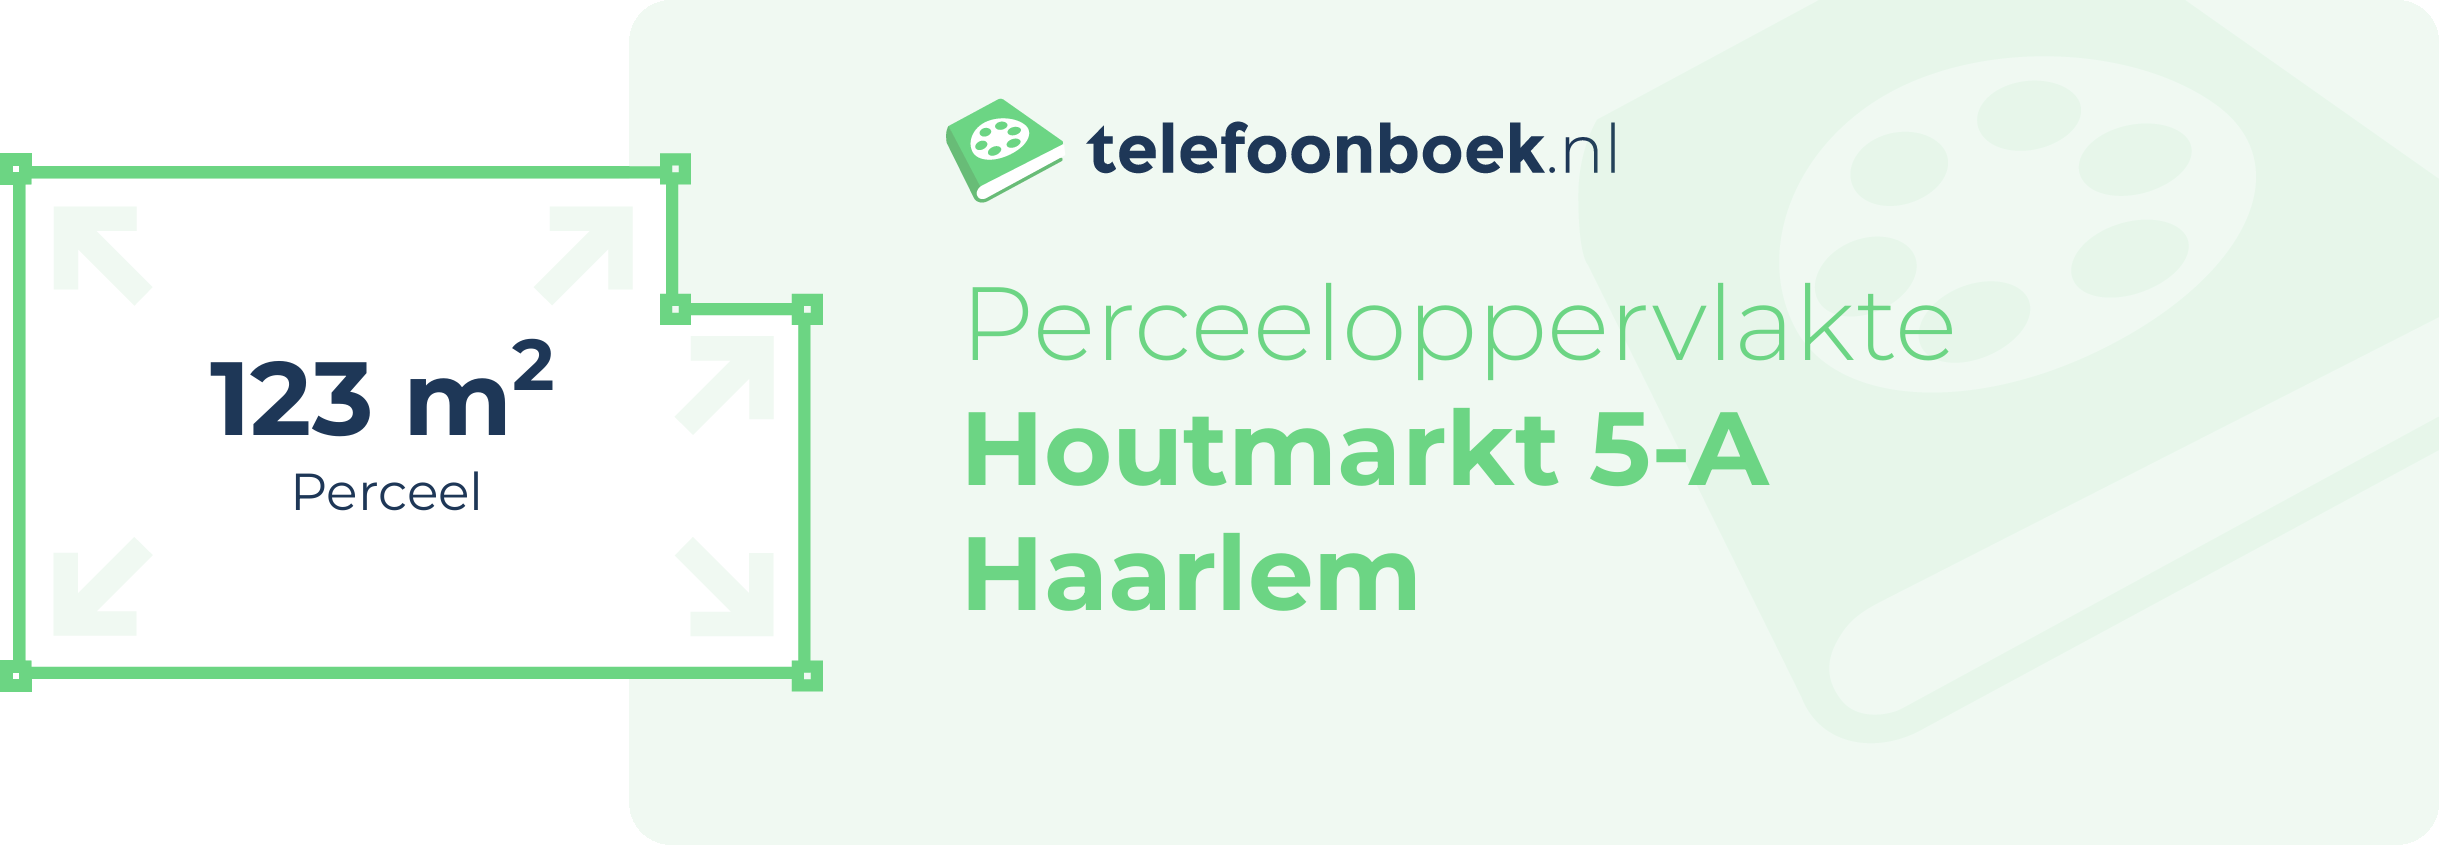 Perceeloppervlakte Houtmarkt 5-A Haarlem